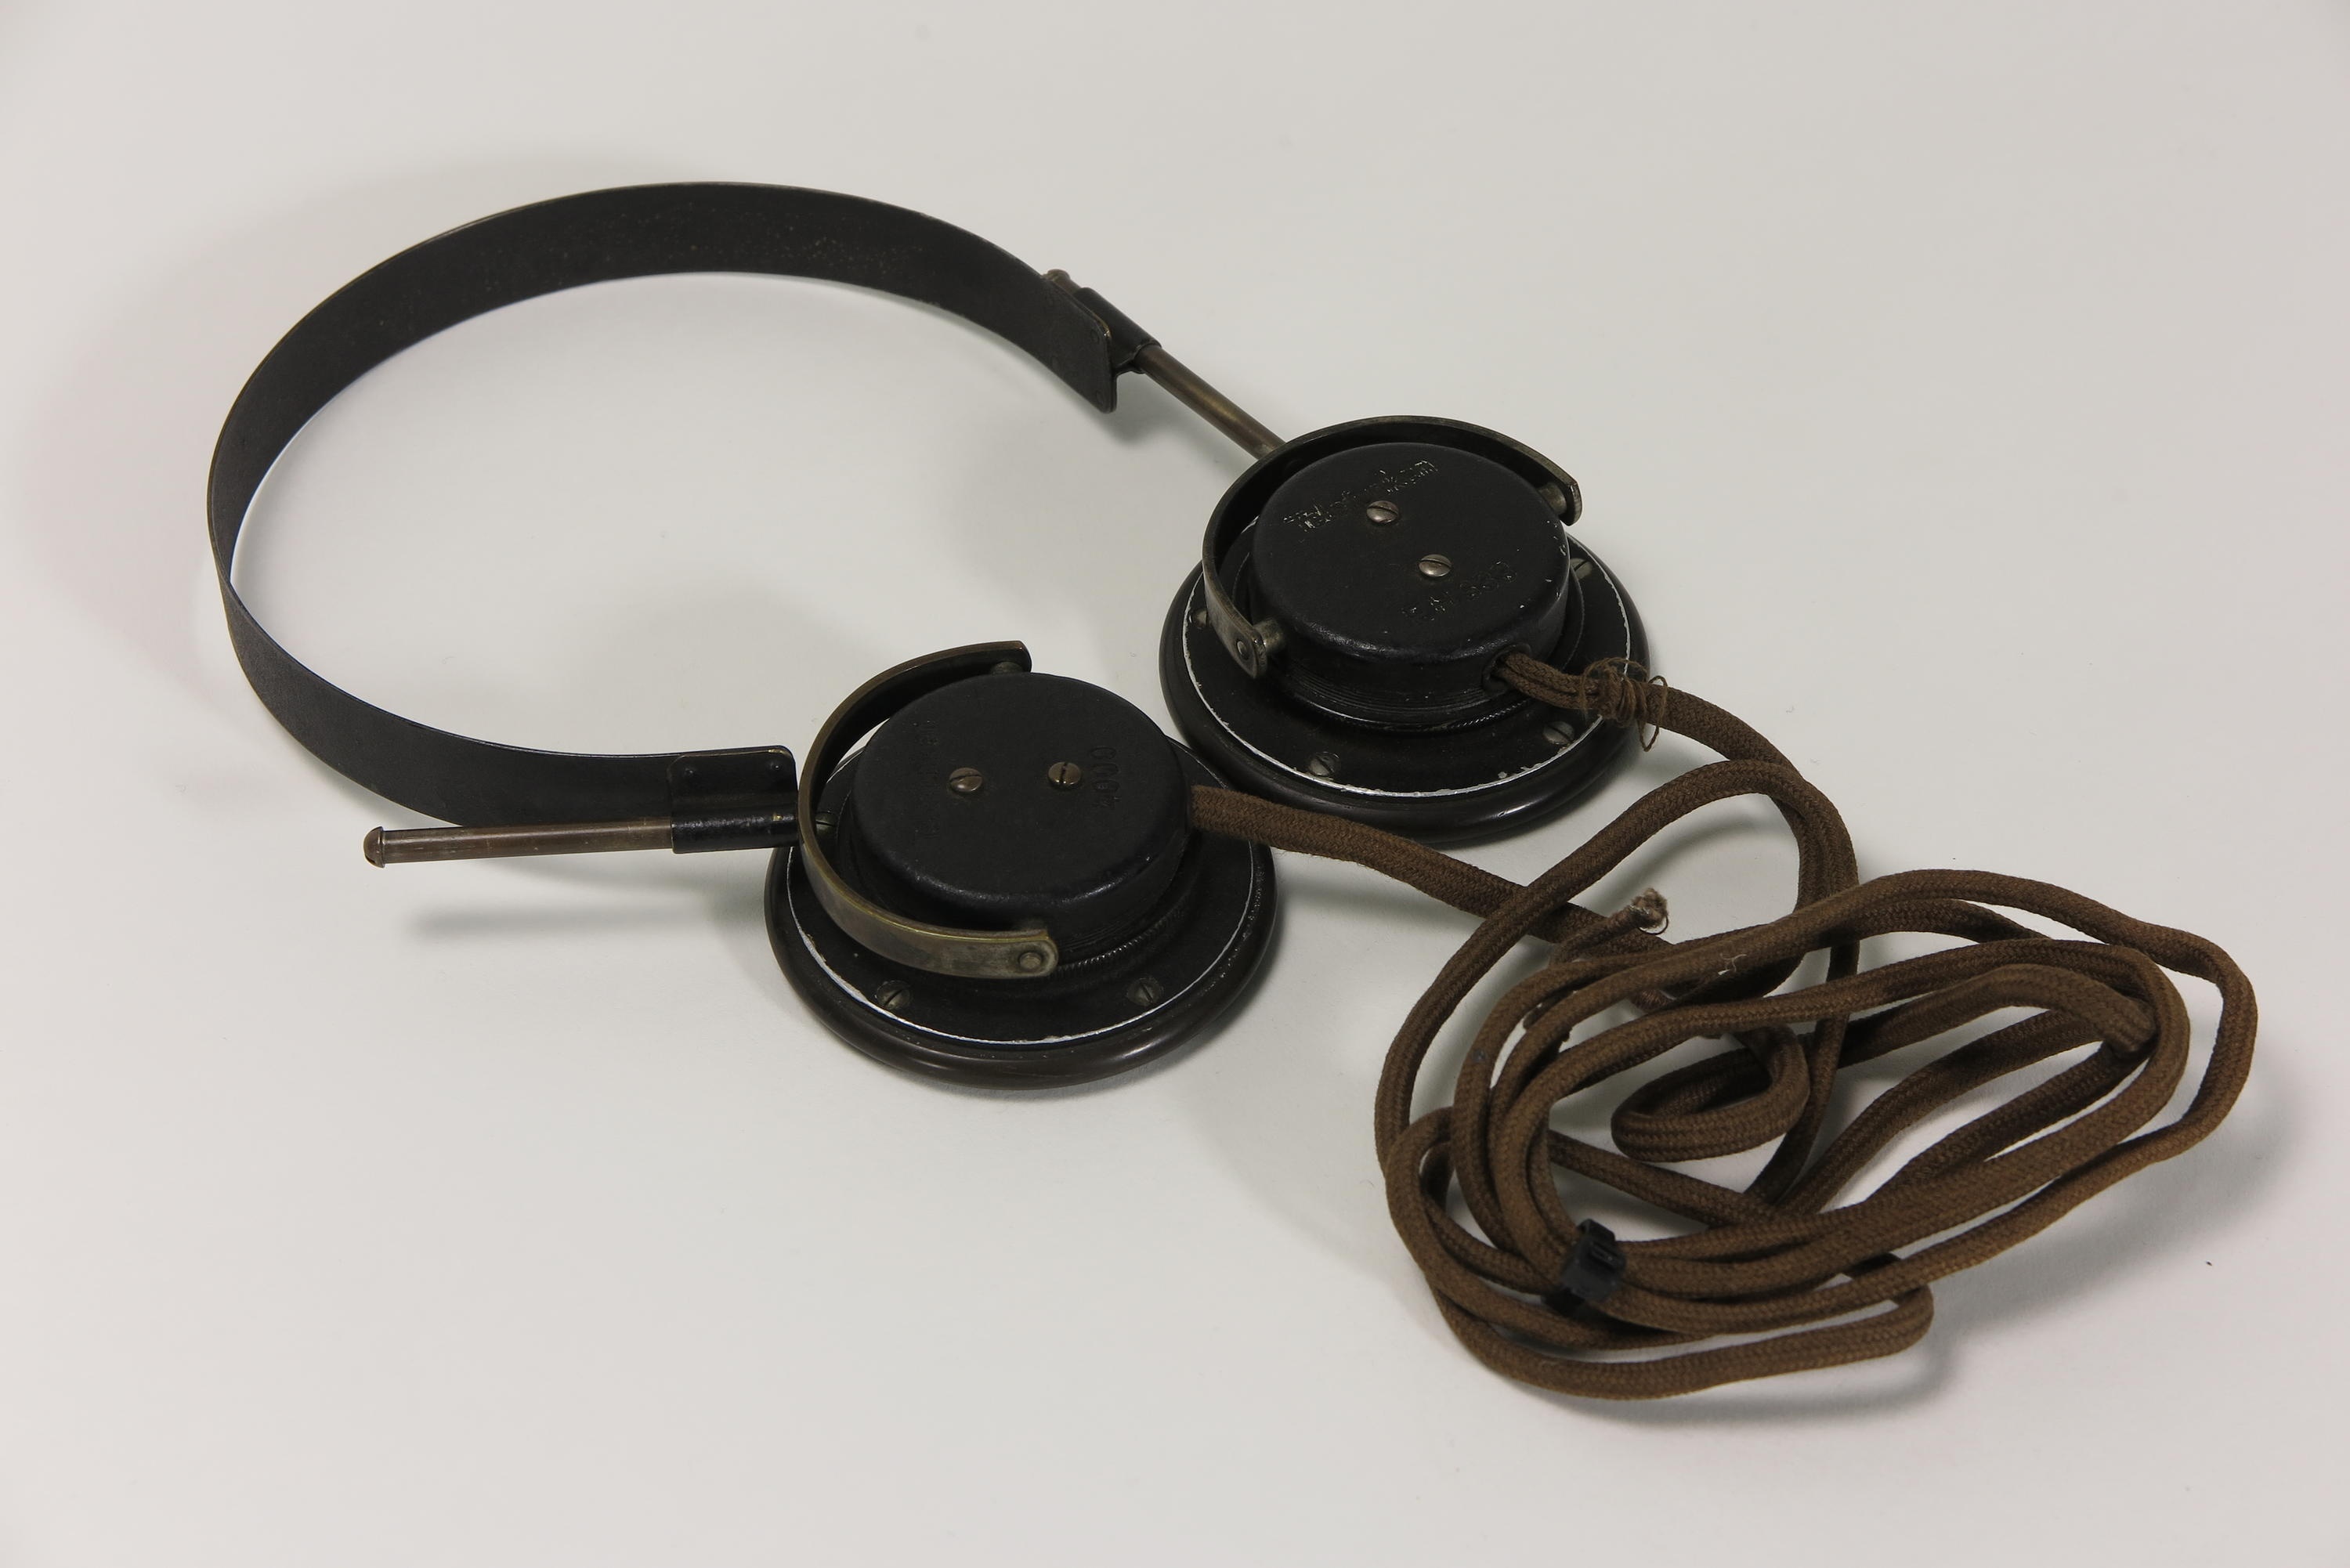 Zubehör zu Detektorempfänger Telefunken Telefunkon A, Kopfhörer (Deutsches Technikmuseum CC BY)